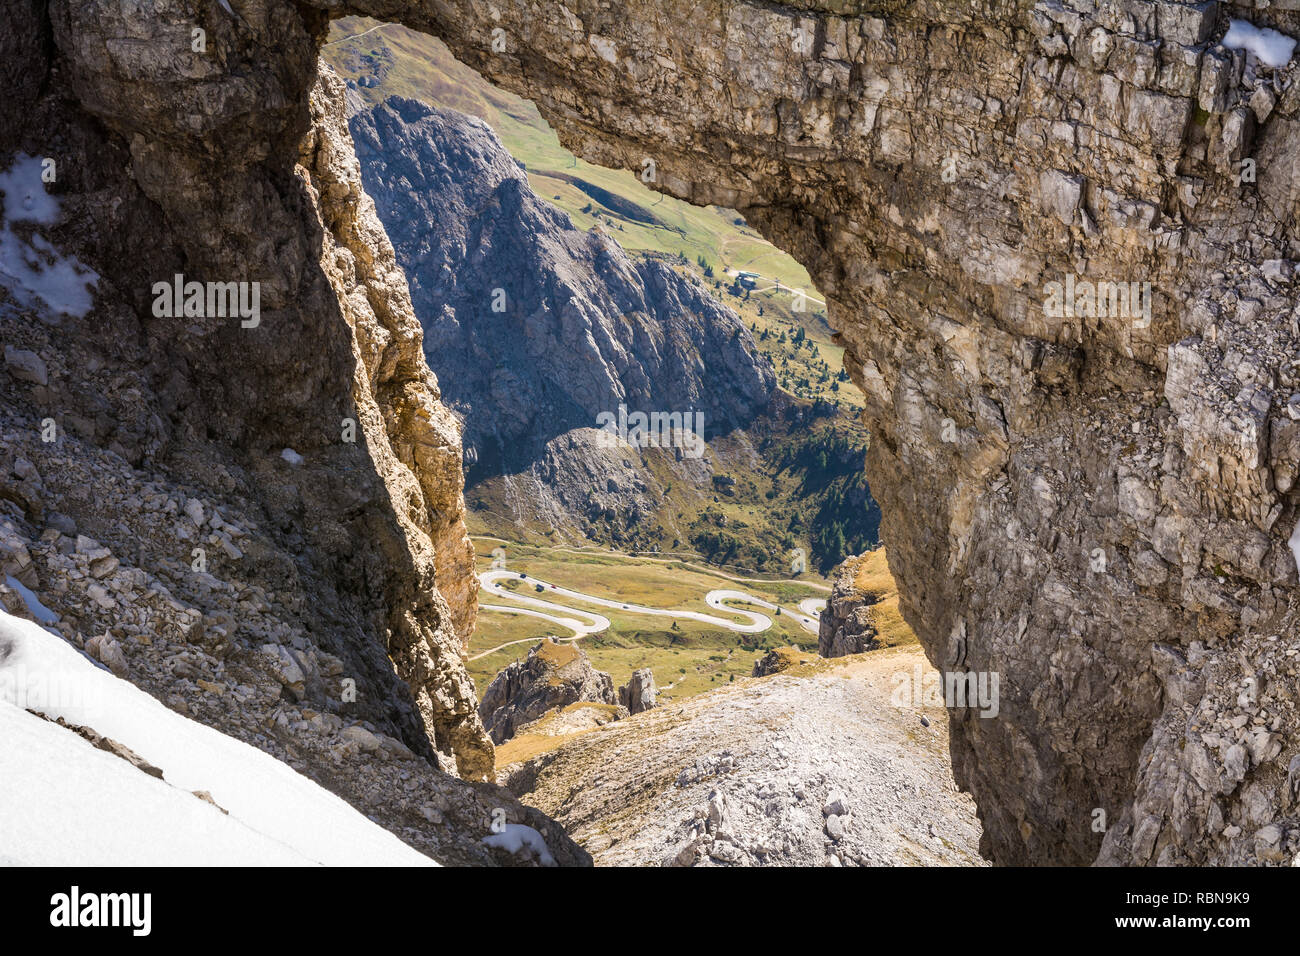 Un rock windows dal Sass Pordoi altopiano delle Dolomiti in Trentino Alto Adige, Italia settentrionale, l'Europa. Vista del Passo Pordoi con serpentine leadin Foto Stock